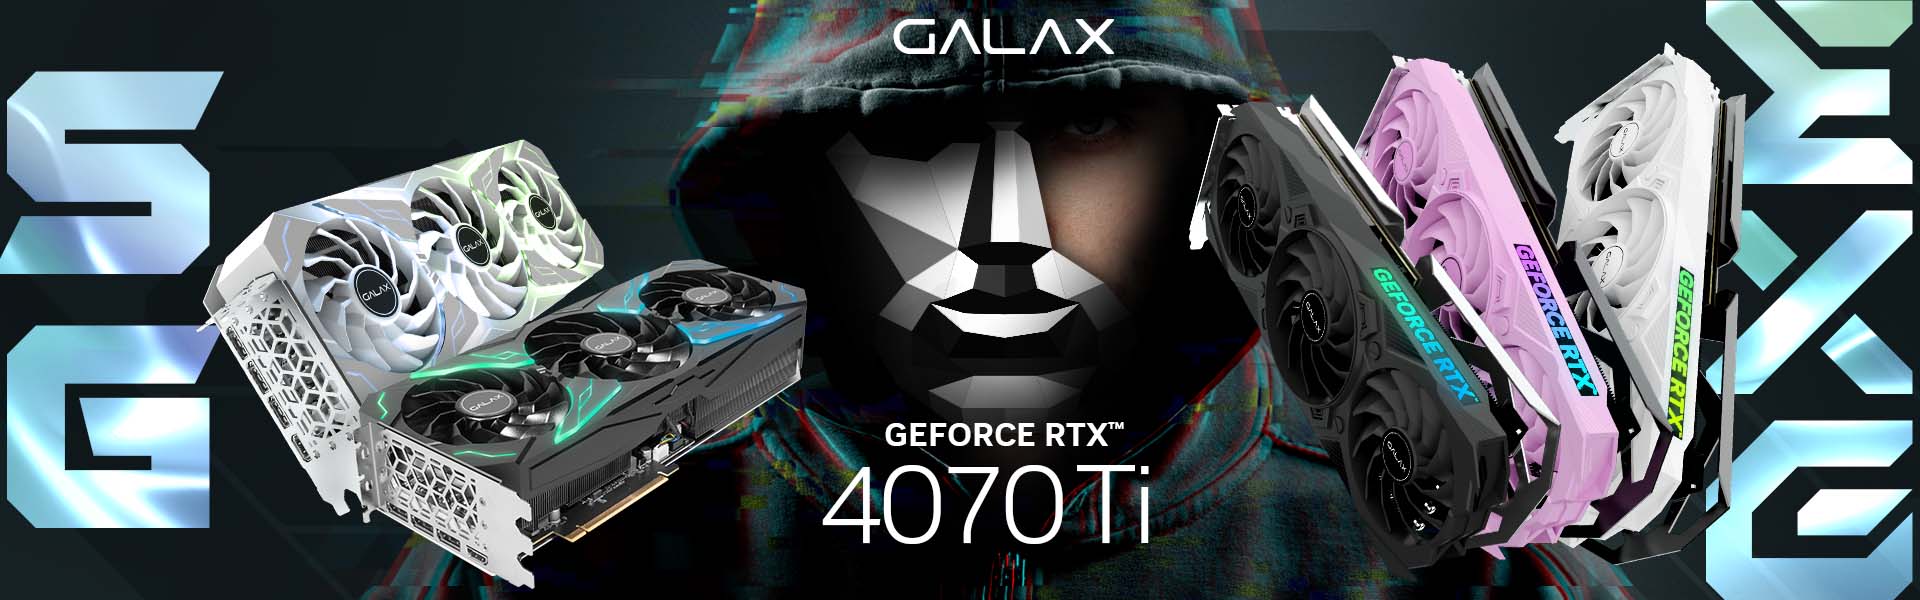 Giới thiệu GALAX GeForce RTX 4070 Ti series EX Gamer, SG và ST Edition mới ra mắt